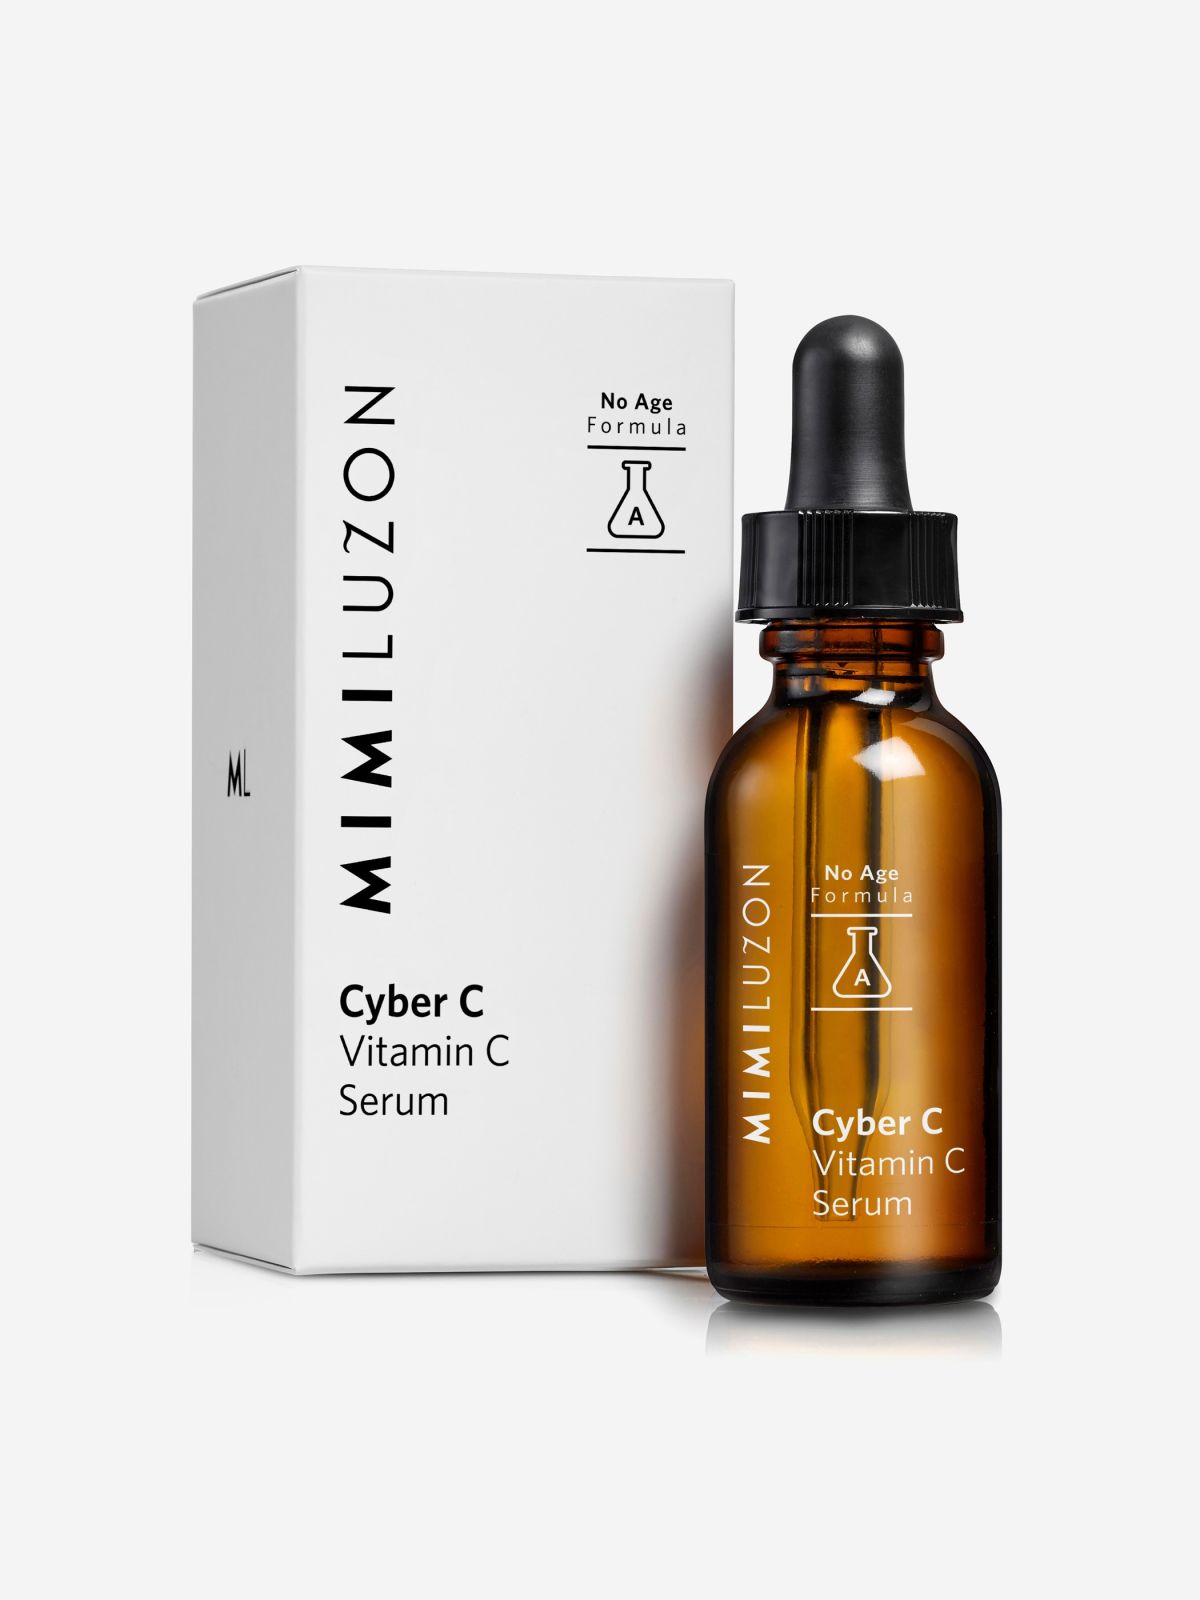  סרום ויטמין סי טהור לחידוש Cyber C Vitamin C Serum של MIMI LUZON